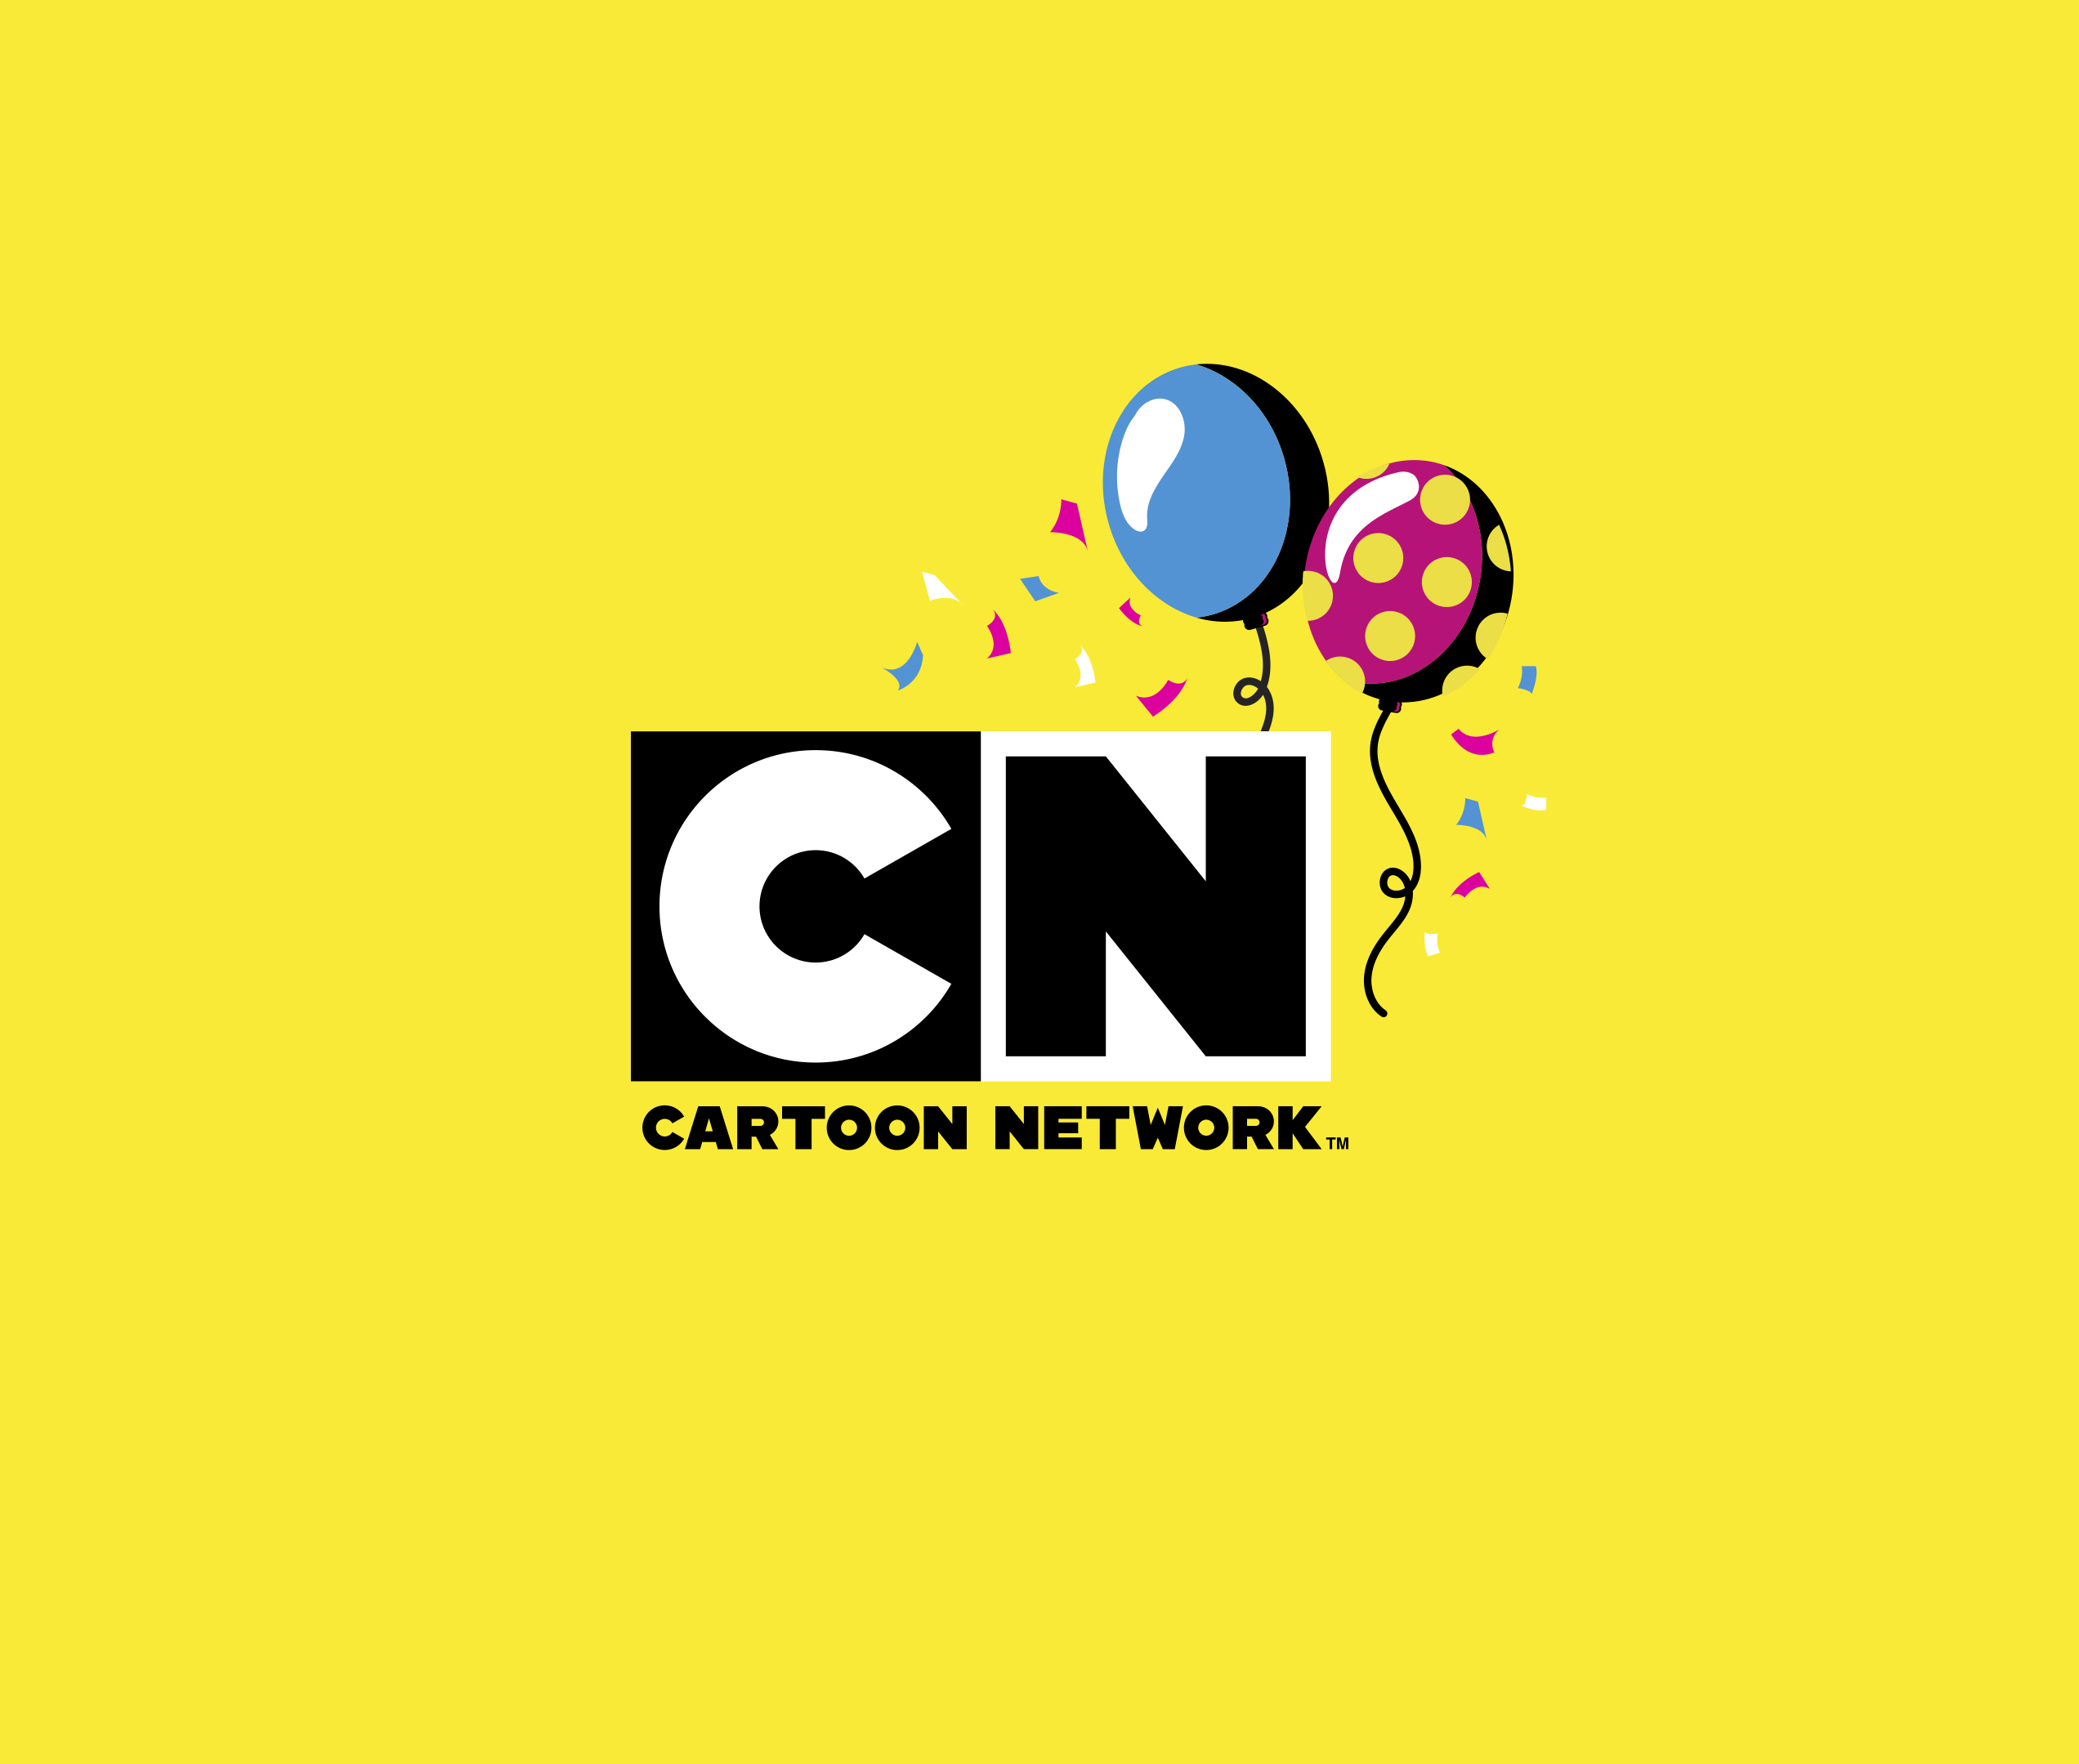 ¡Cartoon Network es la señal de cable más vista de Latinoamérica por quinto año consecutivo!